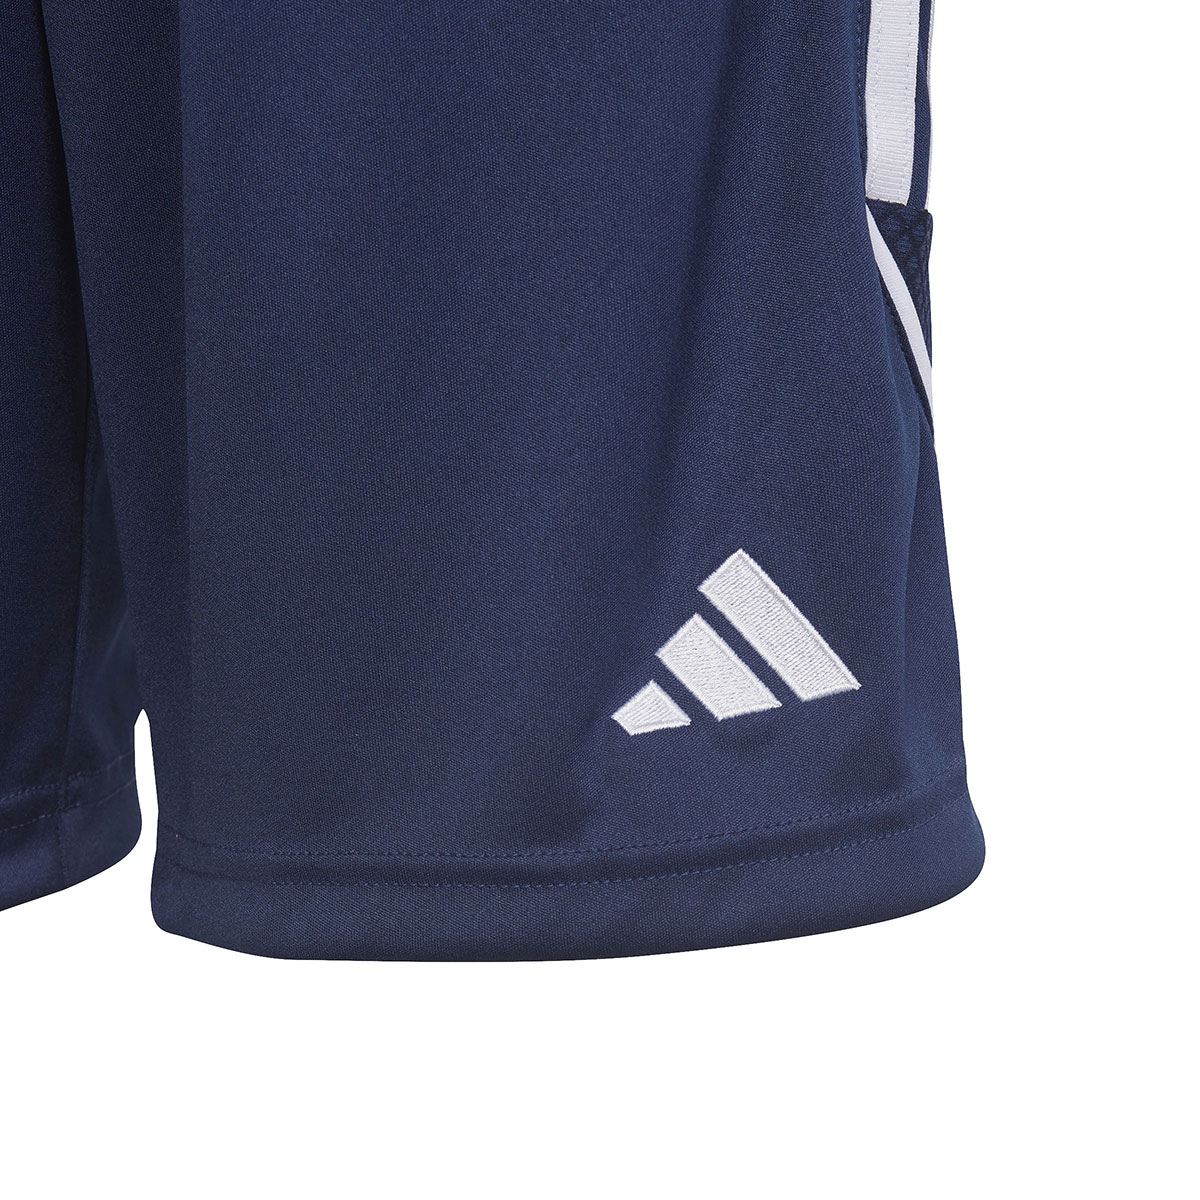 Adidas Kinder Shorts Tiro 23 blau-weiß